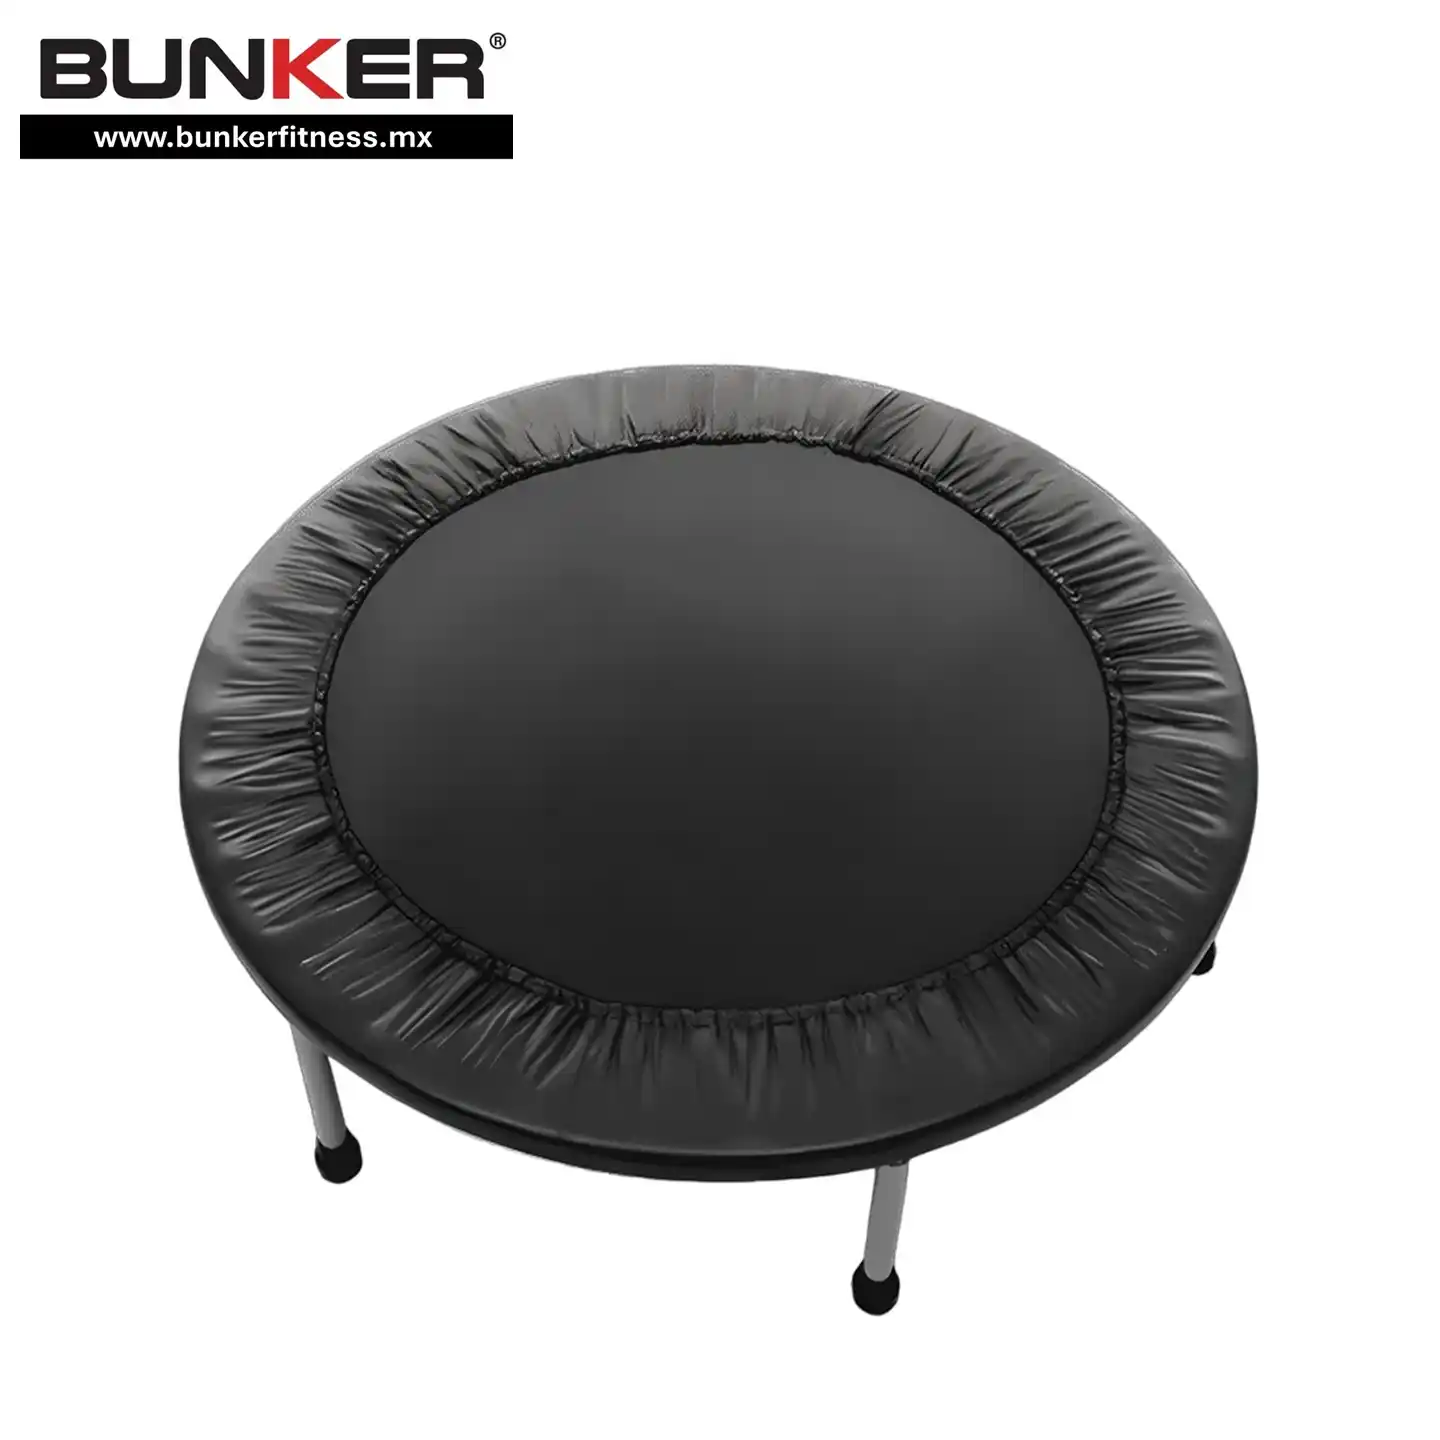 trampolin de 101 cm con 30 resortes para ejercicio para ejercicio y gimnasio en casa bunker gym bunker fitness